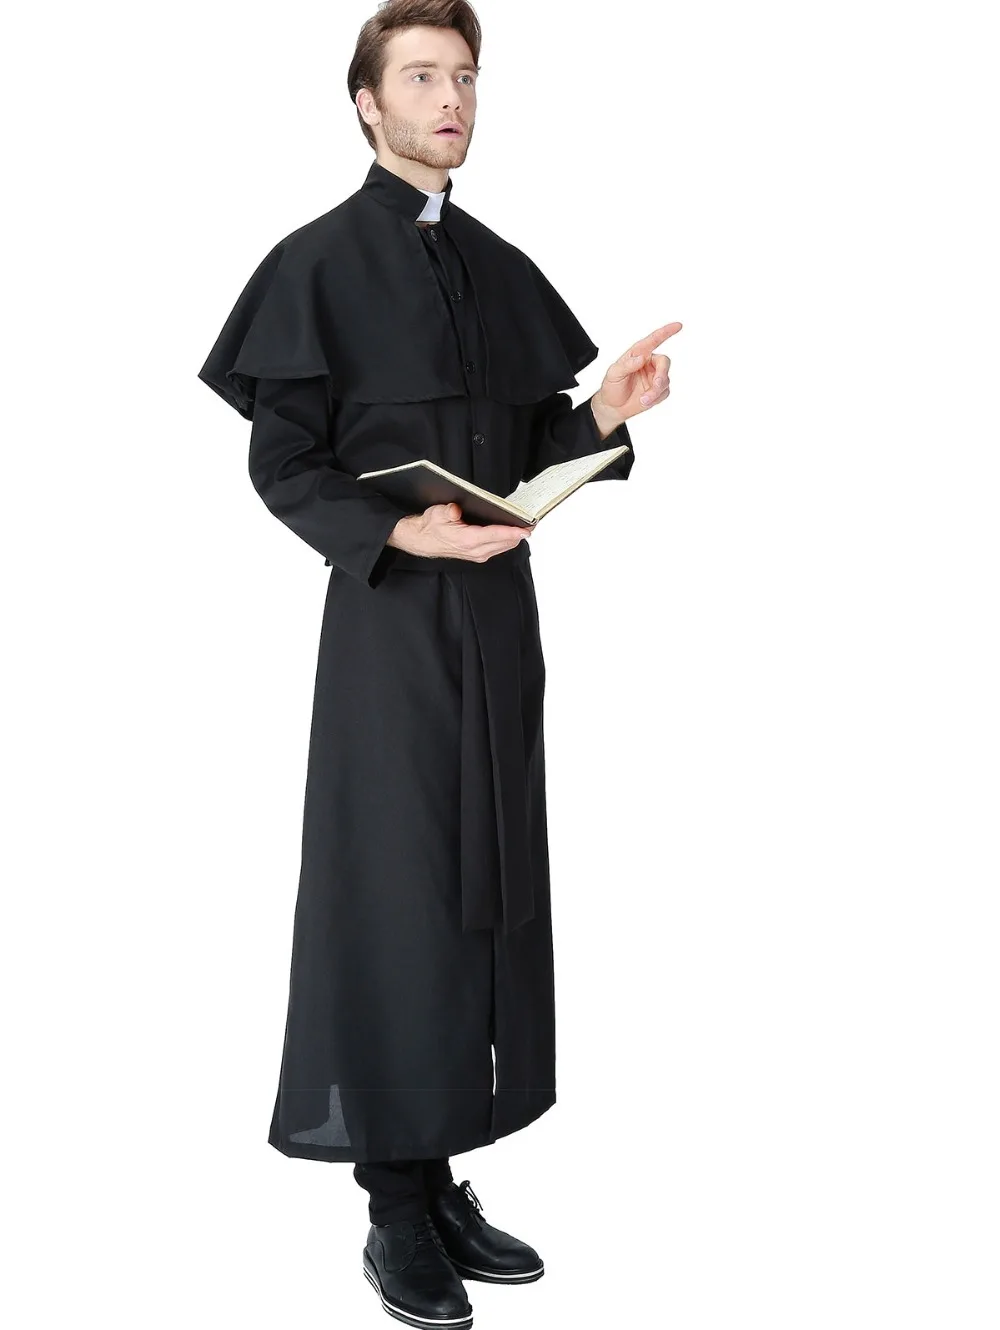 Платье священника. Сутана католического священника. Ряса монаха Католика. Ряса священника монаха. Наряд священника Католика.